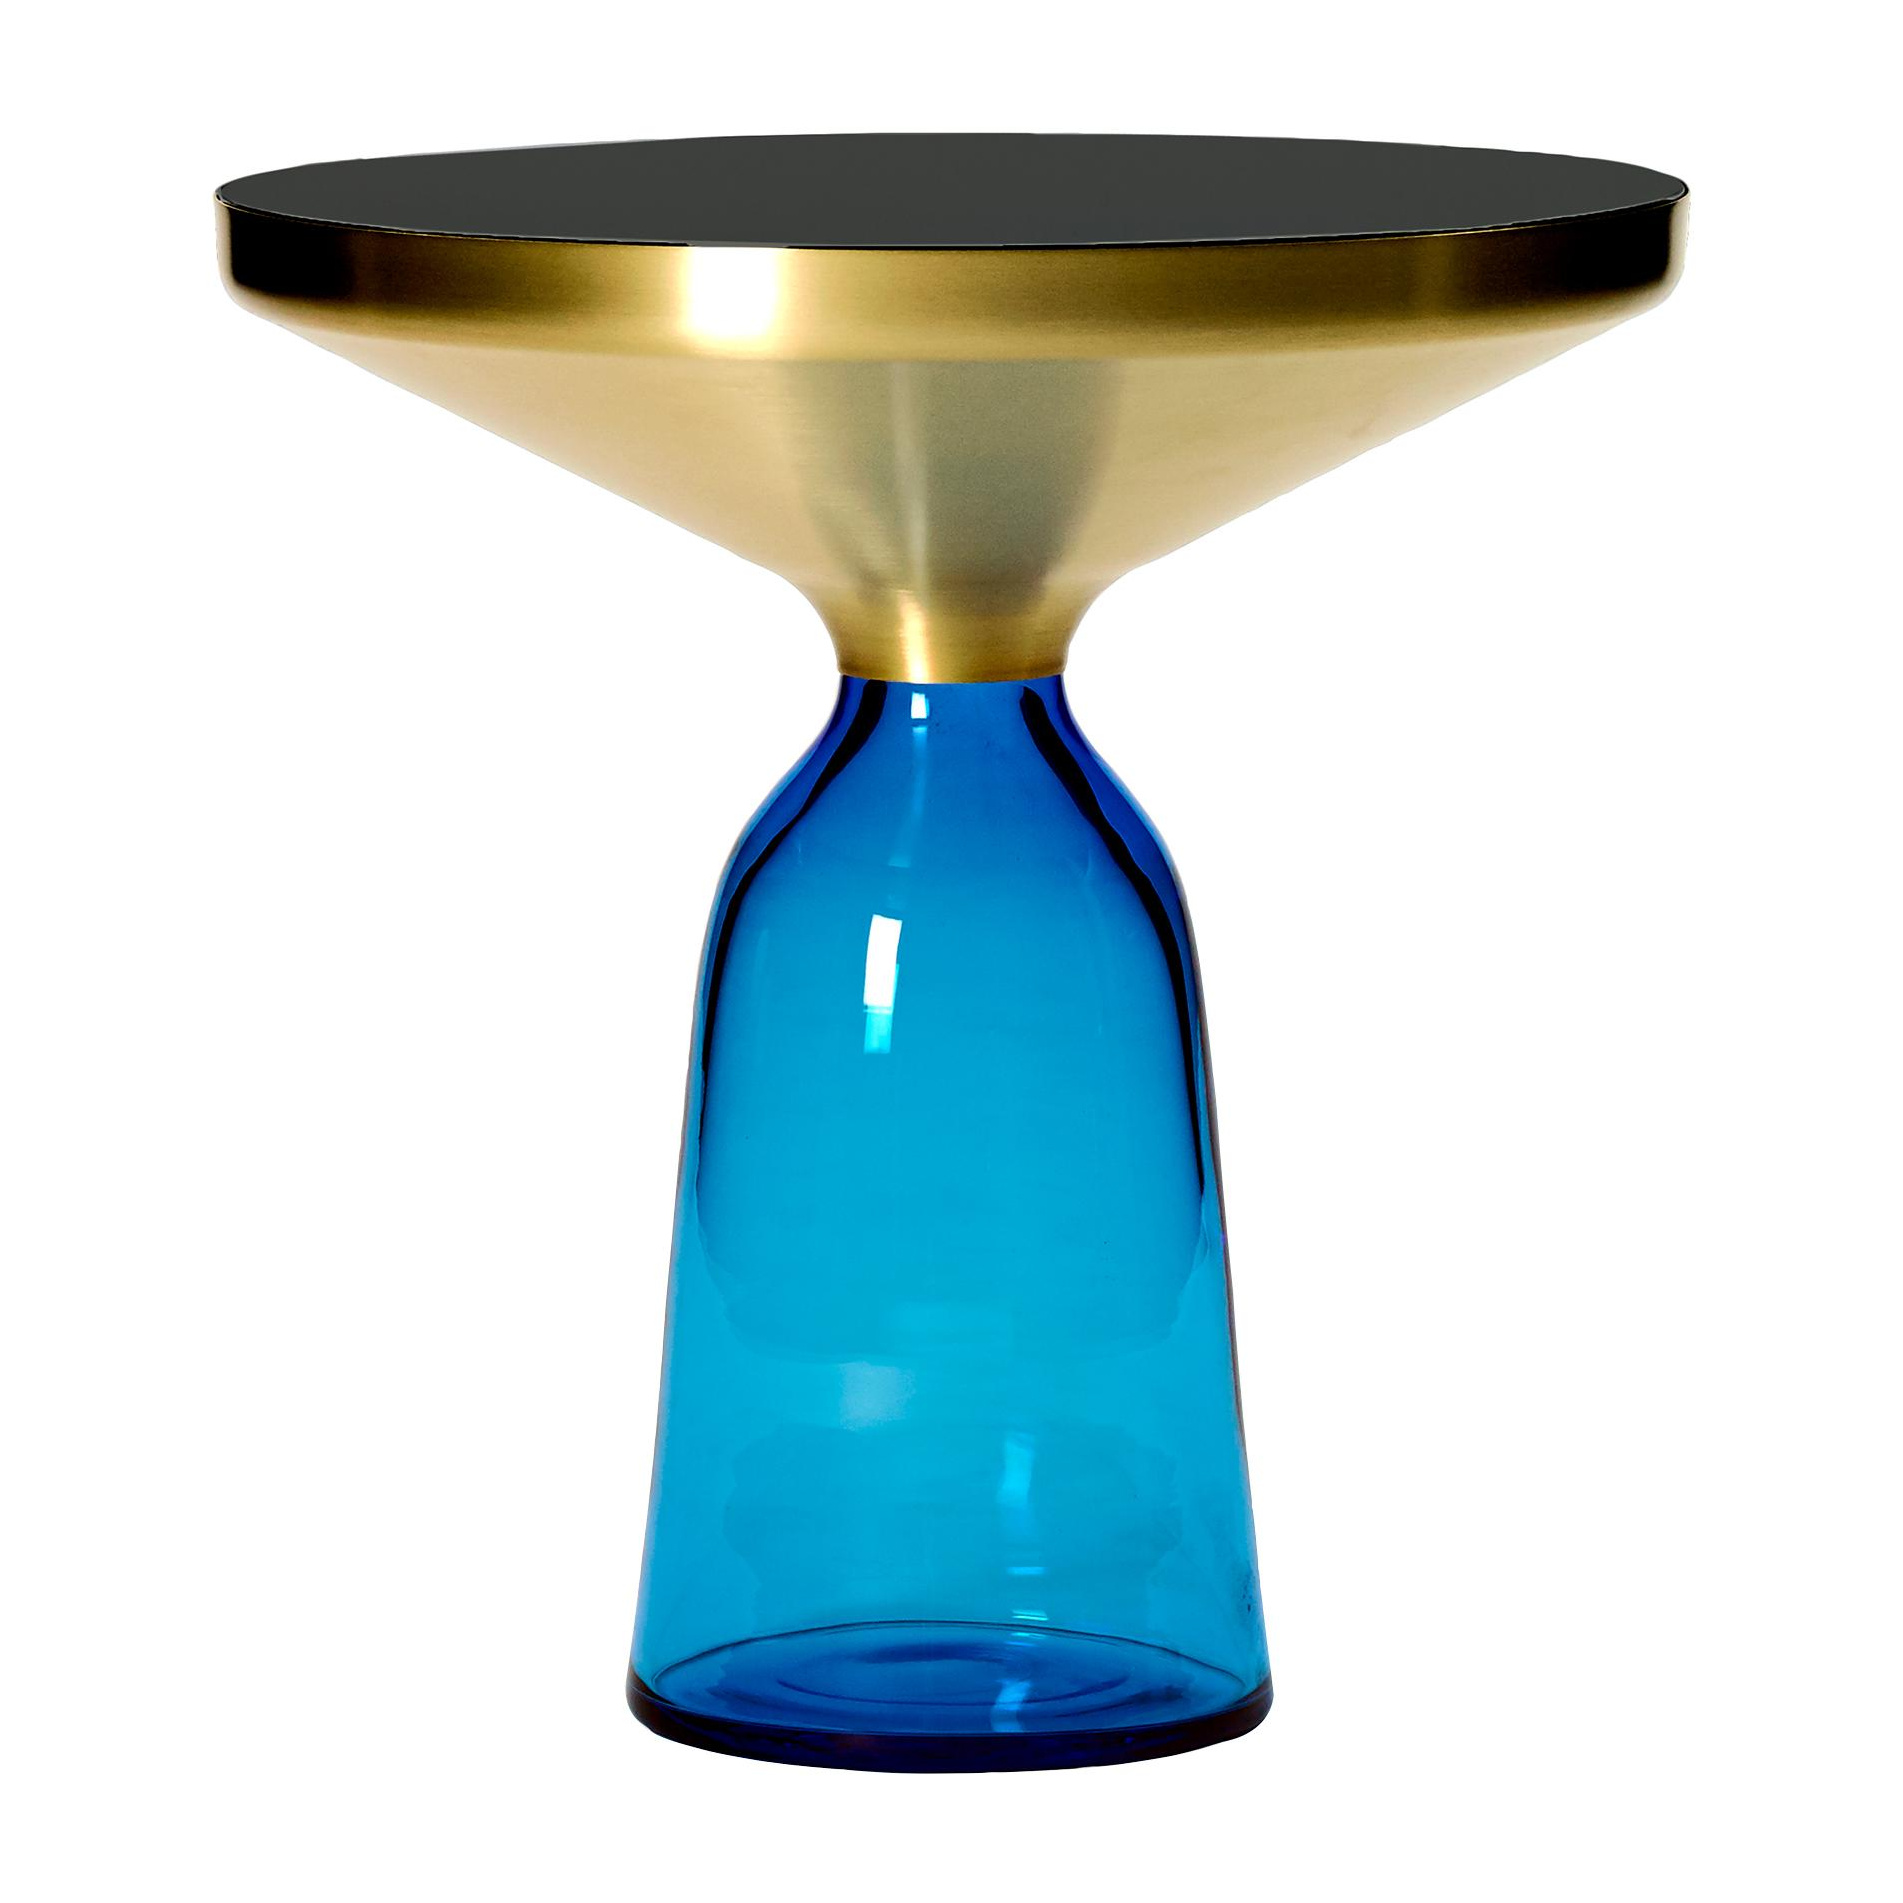 ClassiCon - Bell Side Table Beistelltisch Messing - saphir-blau/Kristallglas/H 53cm/Ø 50cm/Glasfuß HxØ 37x22cm/Metallaufsatz Messing massiv von ClassiCon